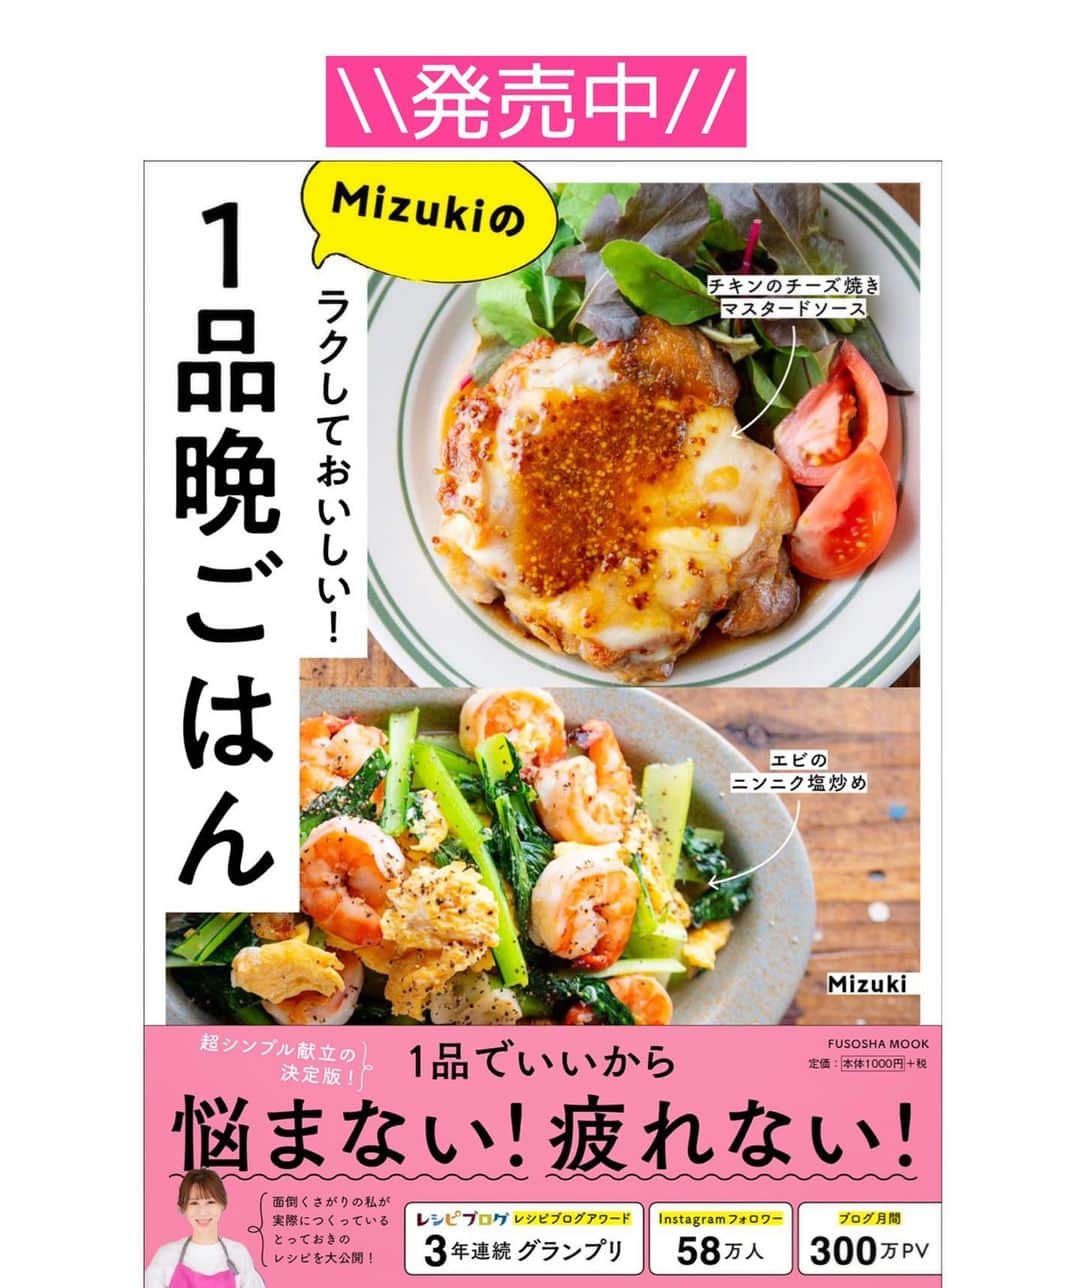 Mizuki【料理ブロガー・簡単レシピ】さんのインスタグラム写真 - (Mizuki【料理ブロガー・簡単レシピ】Instagram)「・﻿ 【#レシピ 】ーーーーーーーー﻿ ♡30分deフライパン煮豚♡﻿ ーーーーーーーーーーーーーー﻿ ﻿ ﻿ ﻿ おはようございます(*^^*)﻿ ﻿ 今日ご紹介させていただくのは﻿ 煮込み30分でできる﻿ \\ フライパン煮豚 //﻿ ﻿ タコ糸は要らないし﻿ 焼きもしない(*´艸`)﻿ 【10分+10分+10分=30分】﻿ ただただ煮るだけ！の﻿ 超簡単レシピです♡﻿ ﻿ お正月料理にもぴったりなので﻿ よかったらお試し下さいね(*^^*)﻿ 染みたたまごも美味しいですよ〜♩﻿ ﻿ ﻿ ﻿ ＿＿＿＿＿＿＿＿＿＿＿＿＿＿＿＿＿＿＿＿﻿ 【4人分】﻿ 豚肩ロースかたまり肉...400〜500g﻿ ゆで卵...4個﻿ 生姜...1かけ﻿ ●水...200ml﻿ ●醤油...100ml﻿ ●みりん...50ml﻿ ●砂糖・酒...各大2﻿ (好みで)白髪ねぎ...適量﻿ ﻿ 1.豚肉は長さを半分に切り、全体をフォークで刺す。生姜は薄切りにする。﻿ 2.フライパンに●を入れて強火にかける。煮立ったら1を入れて蓋をし、弱めの中火で10分煮る。裏返してゆで卵を加え、また蓋をして更に10分煮る。最後は蓋を外し、時々返しながら10分煮る。﻿ 3.2を食べやすい大きさに切り、器に盛って煮汁をかける。仕上げに白髪ねぎをトッピングする。﻿ ￣￣￣￣￣￣￣￣￣￣￣￣￣￣￣￣￣￣￣￣﻿ ﻿ ﻿ ﻿ 《ポイント》﻿ ♦︎煮汁につけたまま一度冷ますとより味が染みます♩﻿ (時間がない時はスライスしてから煮汁に少しつけるのも◎)﻿ ♦︎私は24cmのフライパンを使用しています♩﻿ ♦︎冷蔵庫で4日は保存できます♩﻿ ♦︎豚肉のみ冷凍もOK！スライスしてから煮汁と一緒に保存袋に入れ、空気を抜いて冷凍して下さい♩﻿ ﻿ ﻿ ﻿ ﻿ ﻿ ﻿ ﻿ ﻿ 📕新刊発売中📕﻿ 【ラクしておいしい！#1品晩ごはん 】﻿ ￣￣￣￣￣￣￣￣￣￣￣￣￣￣￣￣￣﻿ 私たちだってヘトヘトな日がある•••﻿ 毎日何品も作っていられない•••﻿ もうごはんに悩みたくない😢﻿ そんな時、1品ごはんはいかがでしょう？﻿ というご提案です✨﻿ ﻿ 【1品ごはん】は﻿ 副菜いらずで全てがシンプル！﻿ ￣￣￣￣￣￣￣￣￣￣￣￣￣￣￣￣￣￣﻿ 一品つくるだけでいいから﻿ 献立を考えなくてよし！﻿ ￣￣￣￣￣￣￣￣￣￣￣￣￣￣￣￣￣￣﻿ 悩まない、疲れない、﻿ 気力や時間がなくてもなんとかなる！﻿ ￣￣￣￣￣￣￣￣￣￣￣￣￣￣￣￣￣￣﻿ そんな頼りになる﻿ 便利なお助けごはんです☺️💕﻿ (ハイライトに🔗貼っています✨)﻿ ￣￣￣￣￣￣￣￣￣￣￣￣￣￣￣￣￣﻿ ﻿ ﻿ ﻿ ﻿ ﻿ ⭐️発売中⭐️﻿ ＿＿＿＿＿＿＿＿＿＿＿＿＿＿＿＿＿＿﻿ しんどくない献立、考えました♩﻿ \15分でいただきます/﻿ 📕#Mizukiの2品献立 📕﻿ ﻿ 和食をもっとカジュアルに♩﻿ \毎日のごはんがラクになる/﻿ 📘#Mizukiの今どき和食 📘﻿ ﻿ ホケミレシピの決定版♩﻿ \はじめてでも失敗しない/﻿ 📙ホットケーキミックスのお菓子 📙﻿ ﻿ NHKまる得マガジンテキスト☆﻿ ホットケーキミックスで﻿ 📗絶品おやつ&意外なランチ📗﻿ ￣￣￣￣￣￣￣￣￣￣￣￣￣￣￣￣￣￣﻿ ﻿ ﻿ ﻿ ＿＿＿＿＿＿＿＿＿＿＿＿＿＿＿＿＿＿﻿ レシピを作って下さった際や﻿ レシピ本についてのご投稿には﻿ タグ付け( @mizuki_31cafe )して﻿ お知らせいただけると嬉しいです😊💕﻿ ￣￣￣￣￣￣￣￣￣￣￣￣￣￣￣￣￣￣﻿ ﻿ ﻿ ﻿ ﻿ #煮豚#フライパン#作り置き#お正月料理#おせち料理#Mizuki#簡単レシピ#時短レシピ#節約レシピ#料理#フーディーテーブル#マカロニメイト#おうちごはん#デリスタグラマー#料理好きな人と繋がりたい#食べ物#おうちごはんlover#写真好きな人と繋がりたい#foodpic#cooking#recipe#lin_stagrammer#foodporn#yummy#f52grams#煮豚m」12月25日 7時02分 - mizuki_31cafe